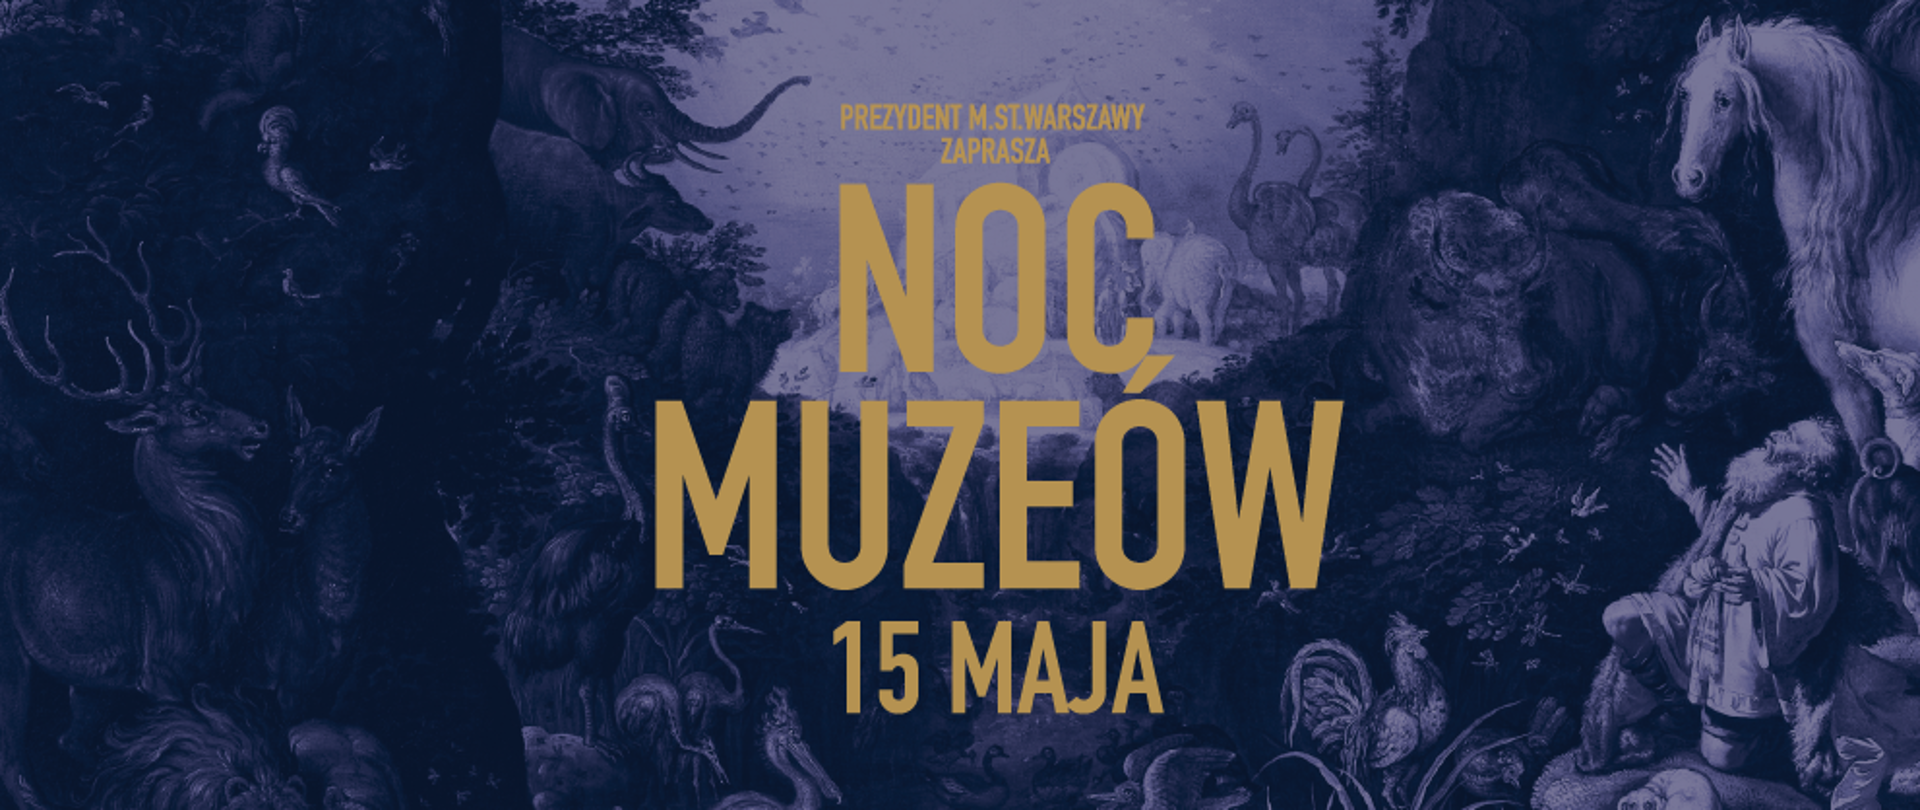 Plakat z napisem Prezydent miasta stołecznego Warszawy zaprasza na noc muzeów 15 maja,, w tle widac zwierzęta .